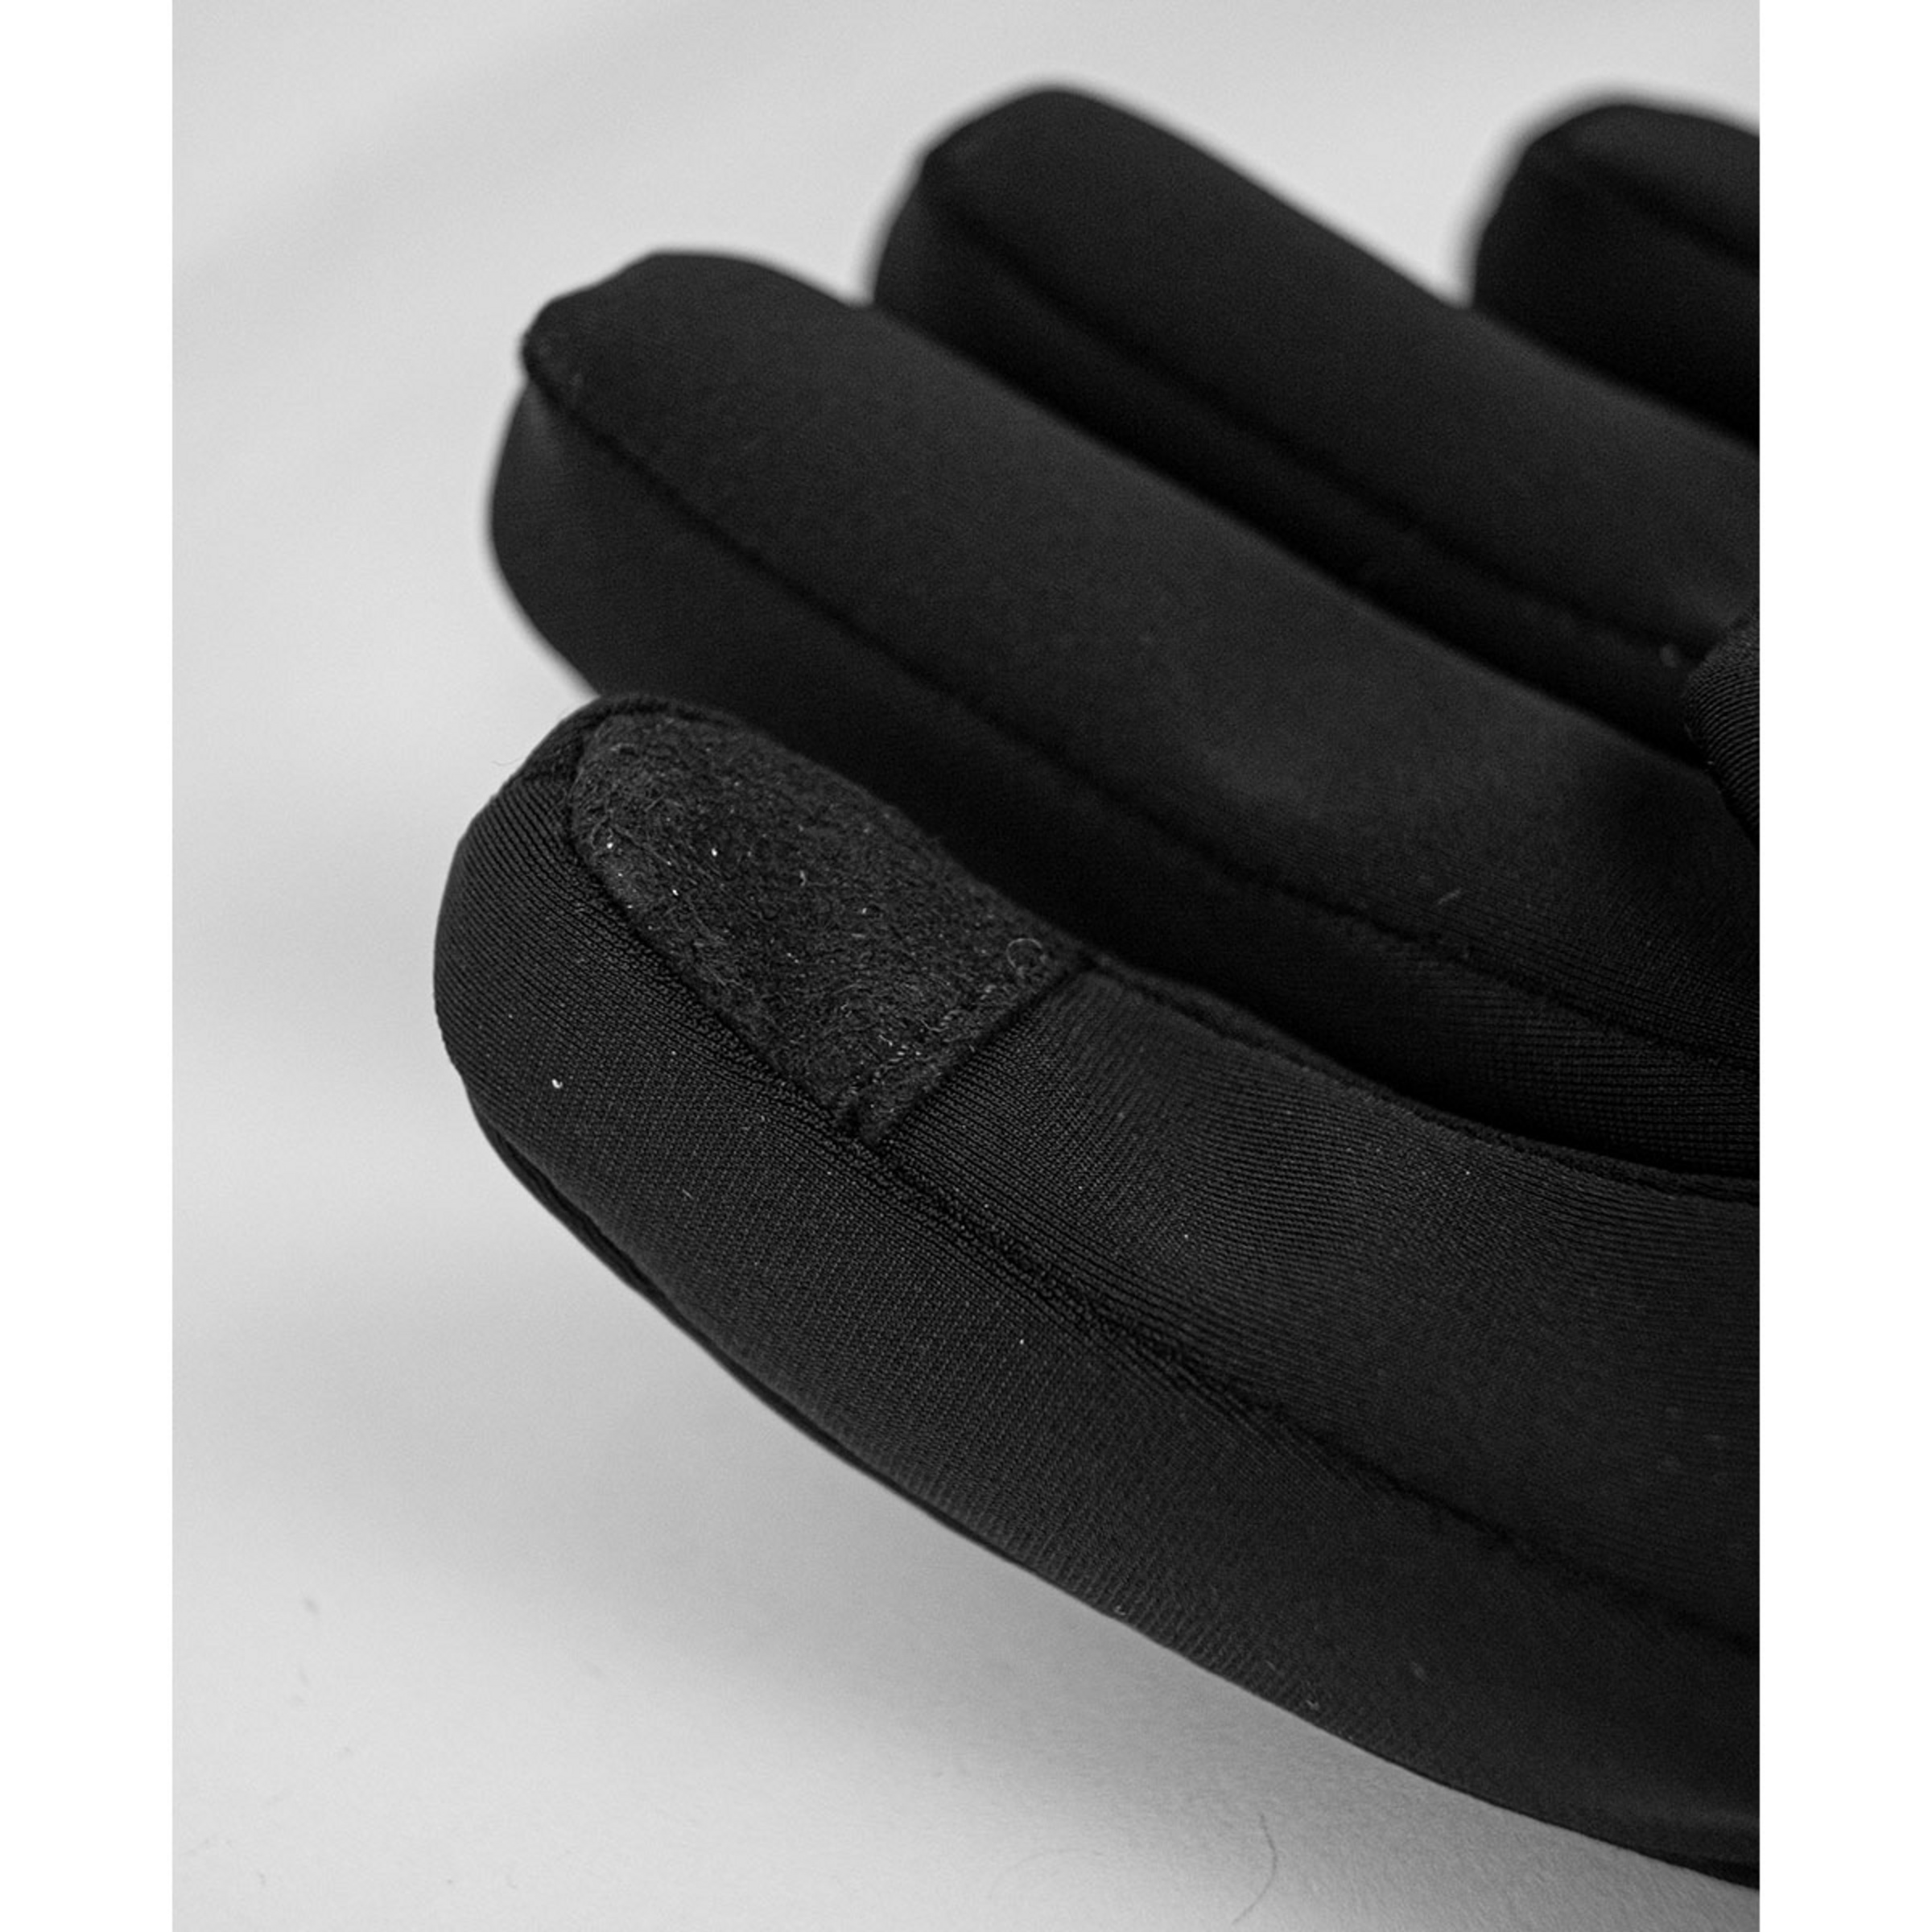 Reusch Damen Saskia Touch-Tec Handschuhe kaufen | Bergzeit